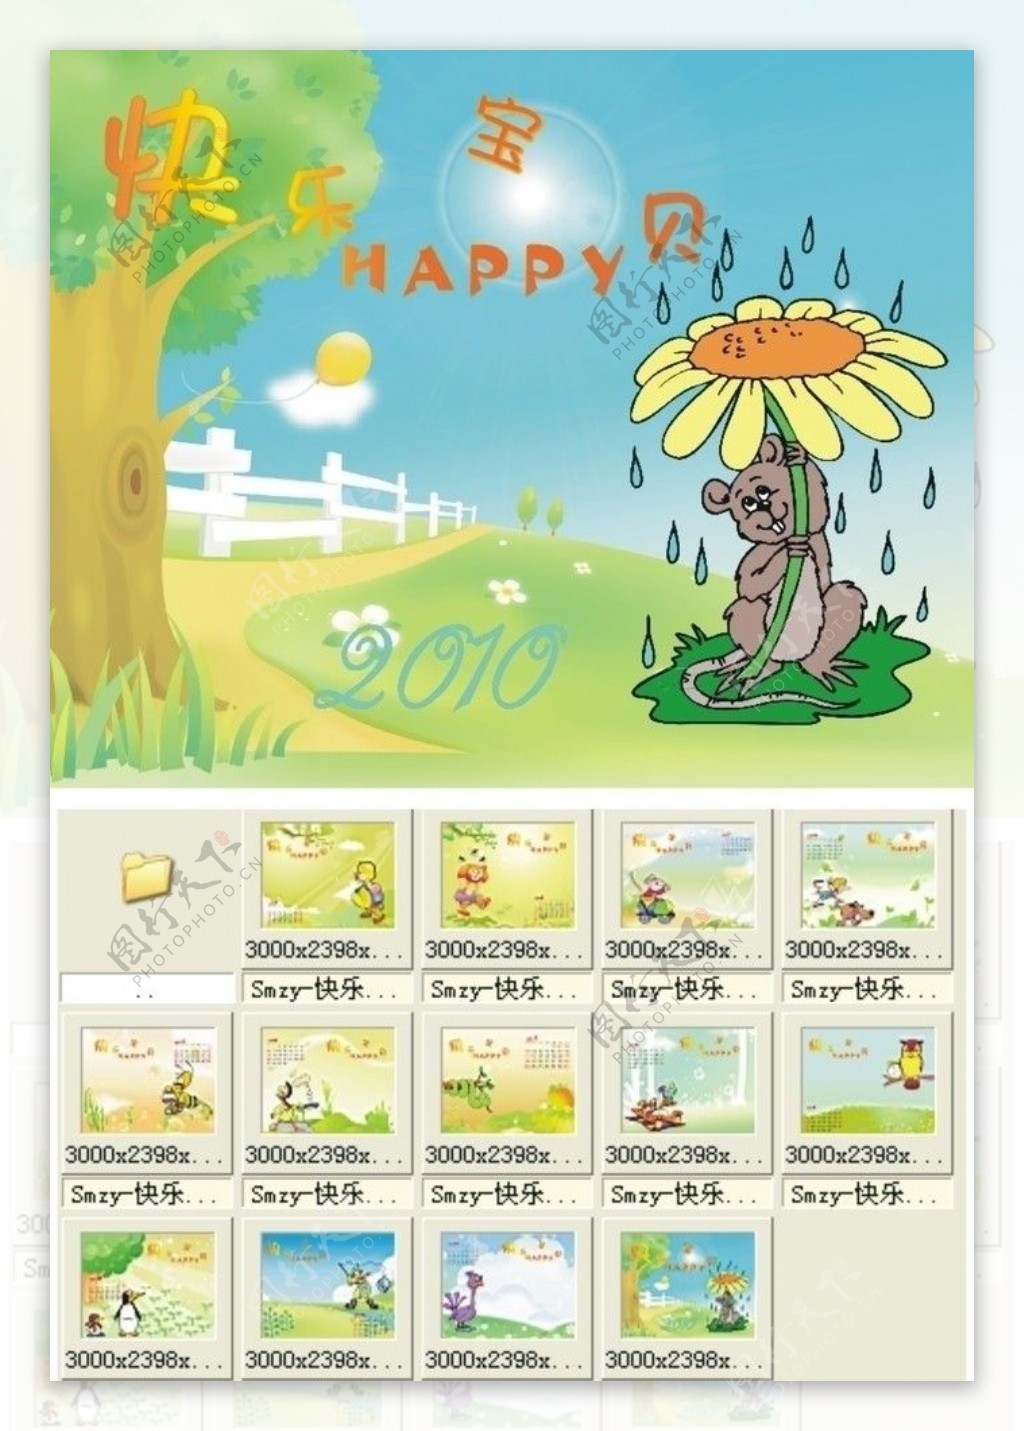 2010年卡通动物日历模板快乐宝贝图片